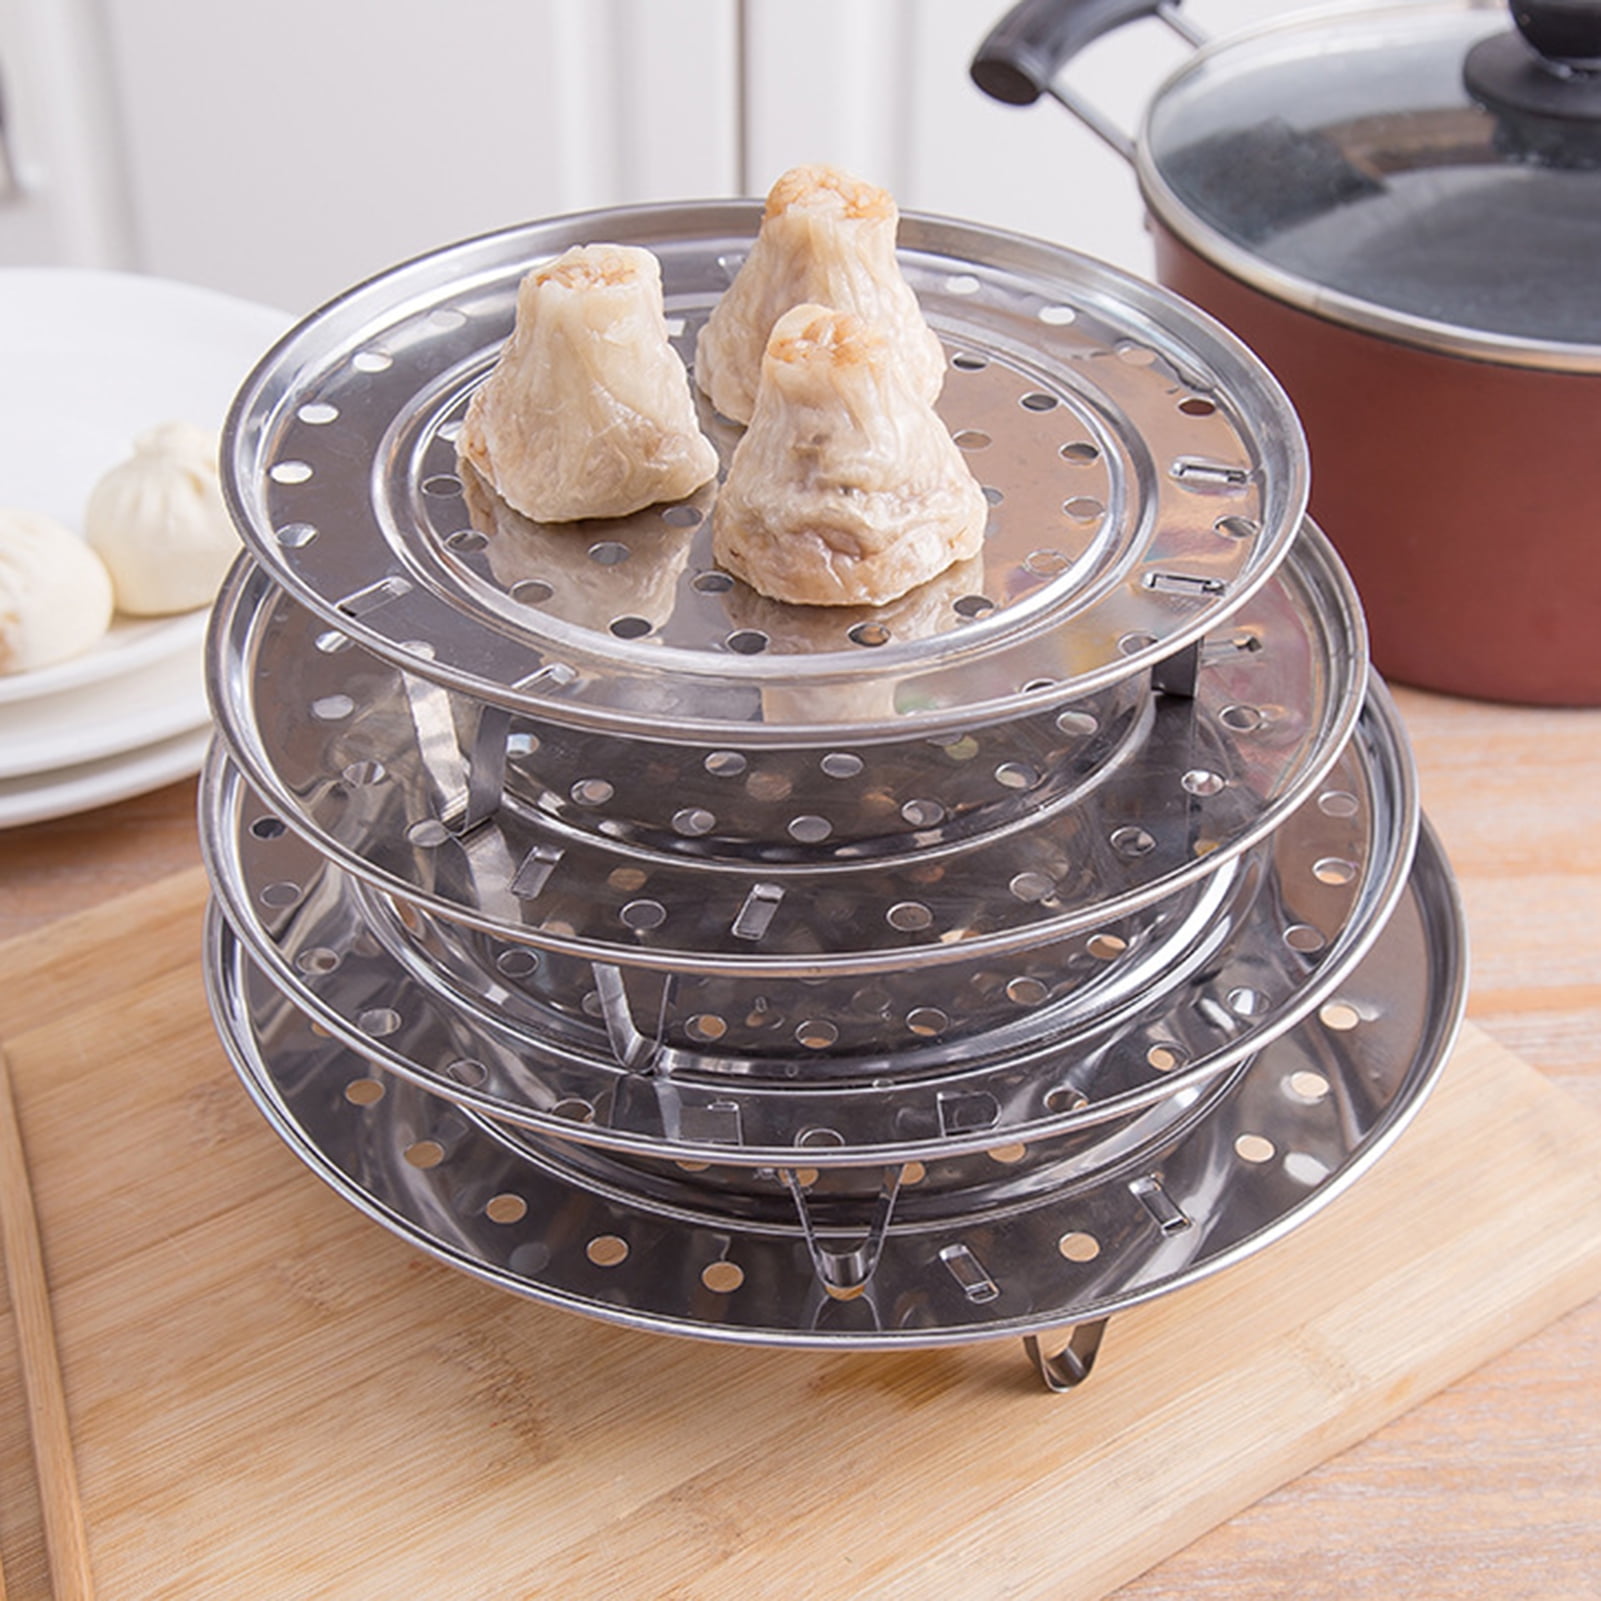 3 Stands Insert Stock Pot Steaming Cookware Steamer Rack Plate